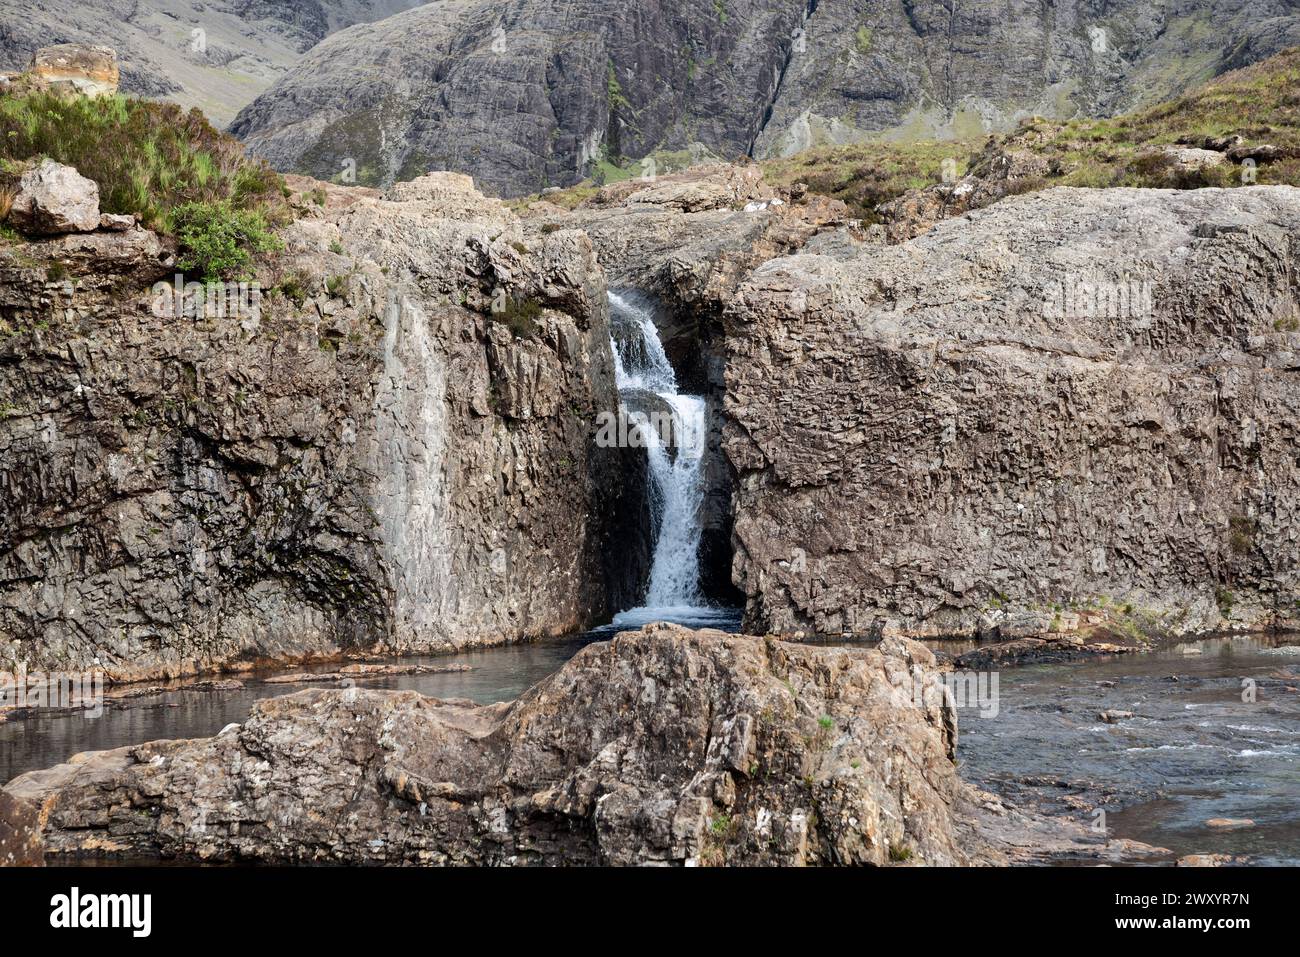 Feen Pools Wasserfall fällt in einen ruhigen Pool, der von zerklüfteten Klippen auf der Isle of Skye umgeben ist und die raue Schönheit des schottischen Highlands einfängt Stockfoto